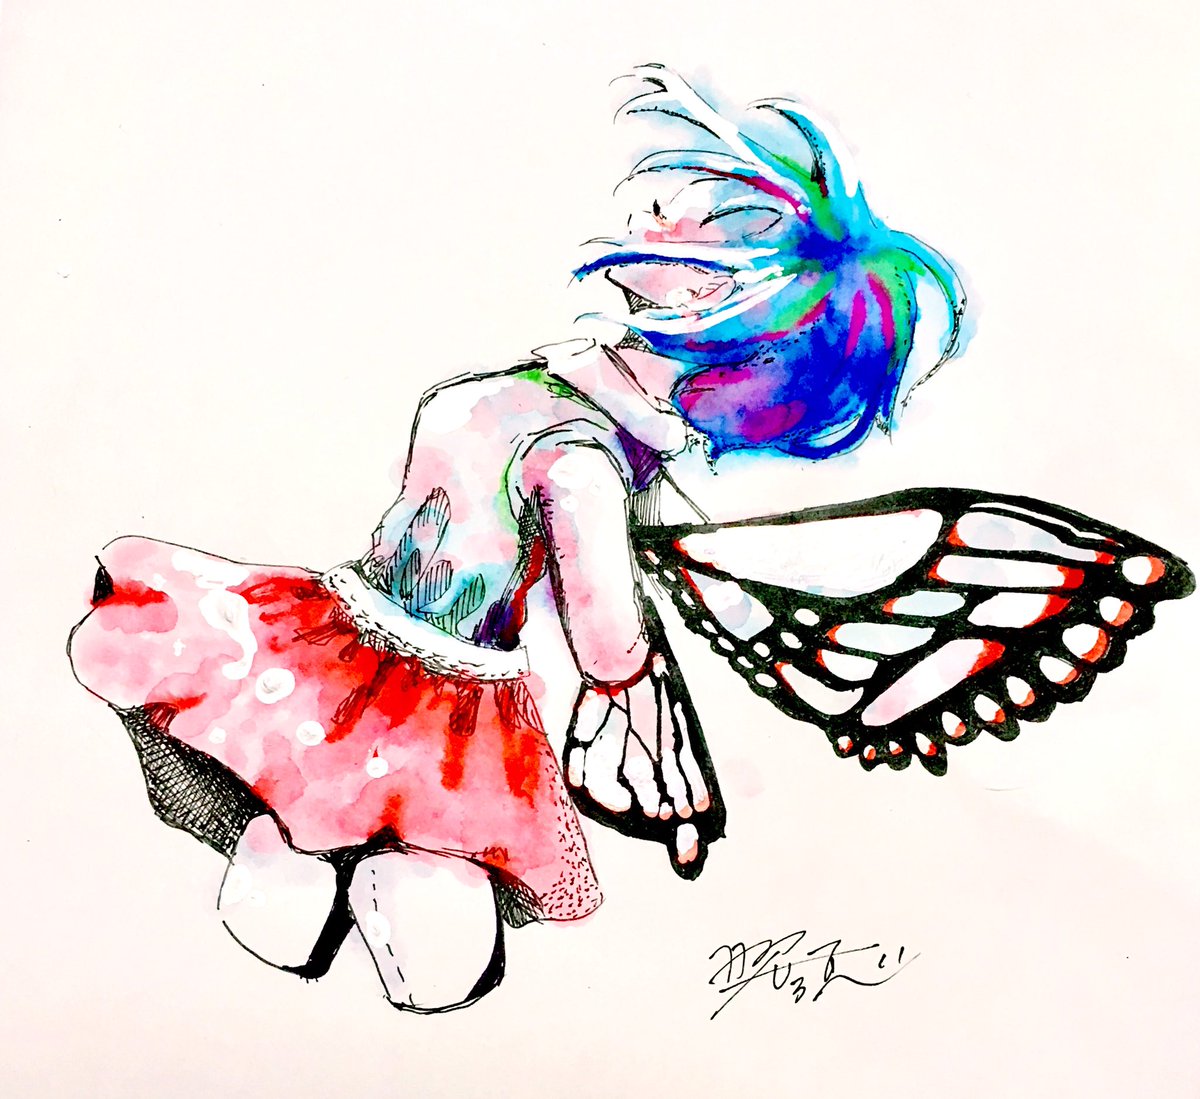 Tema در توییتر 虫の日 蝶々 イラスト てま ほんとはダンゴロ虫描きたかったんだけど 蝶とかかわいいのが見たいです とのリクエストがあったので 蝶々